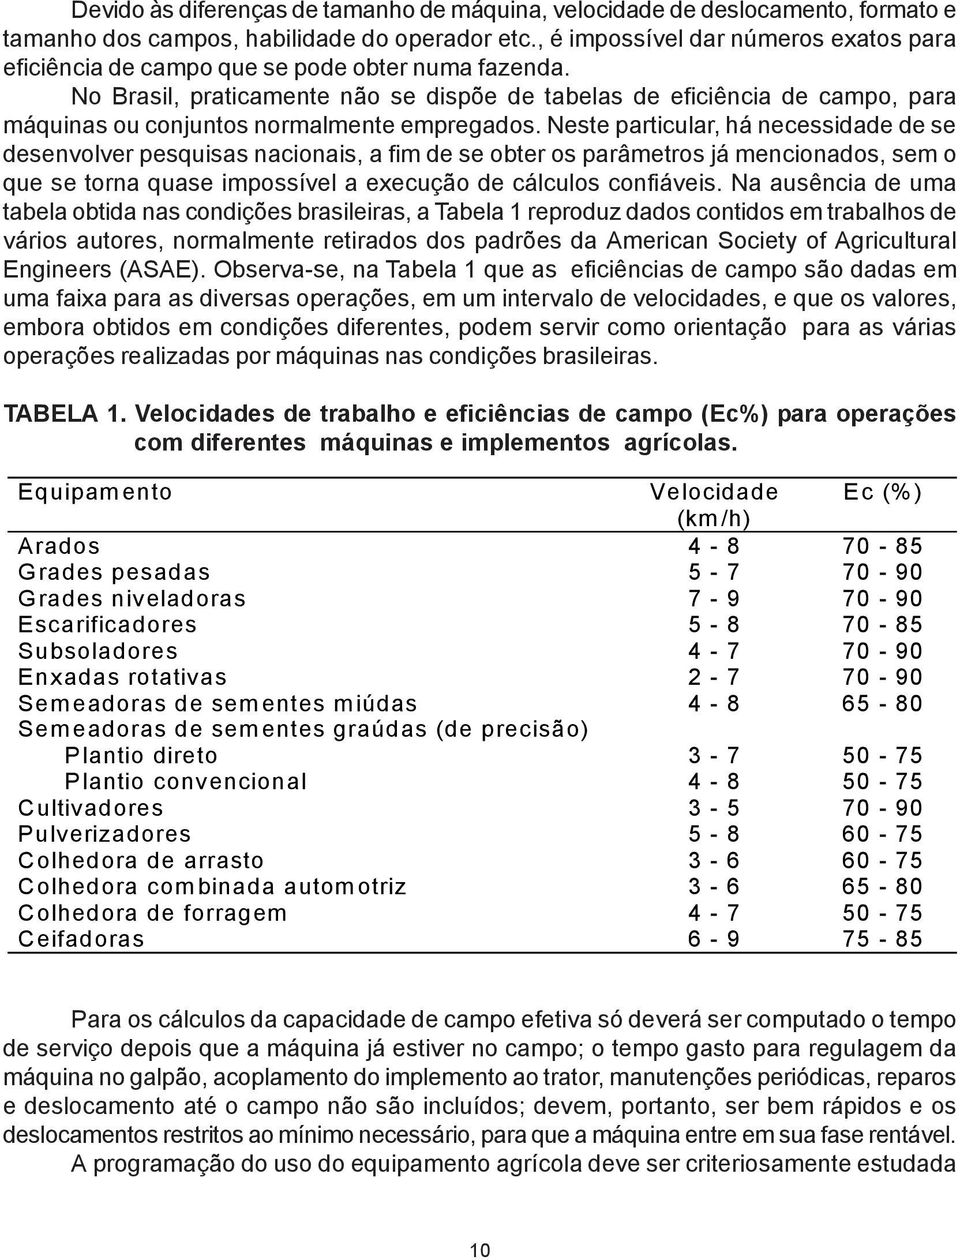 No Brasil, praticamente não se dispõe de tabelas de eficiência de campo, para máquinas ou conjuntos normalmente empregados.